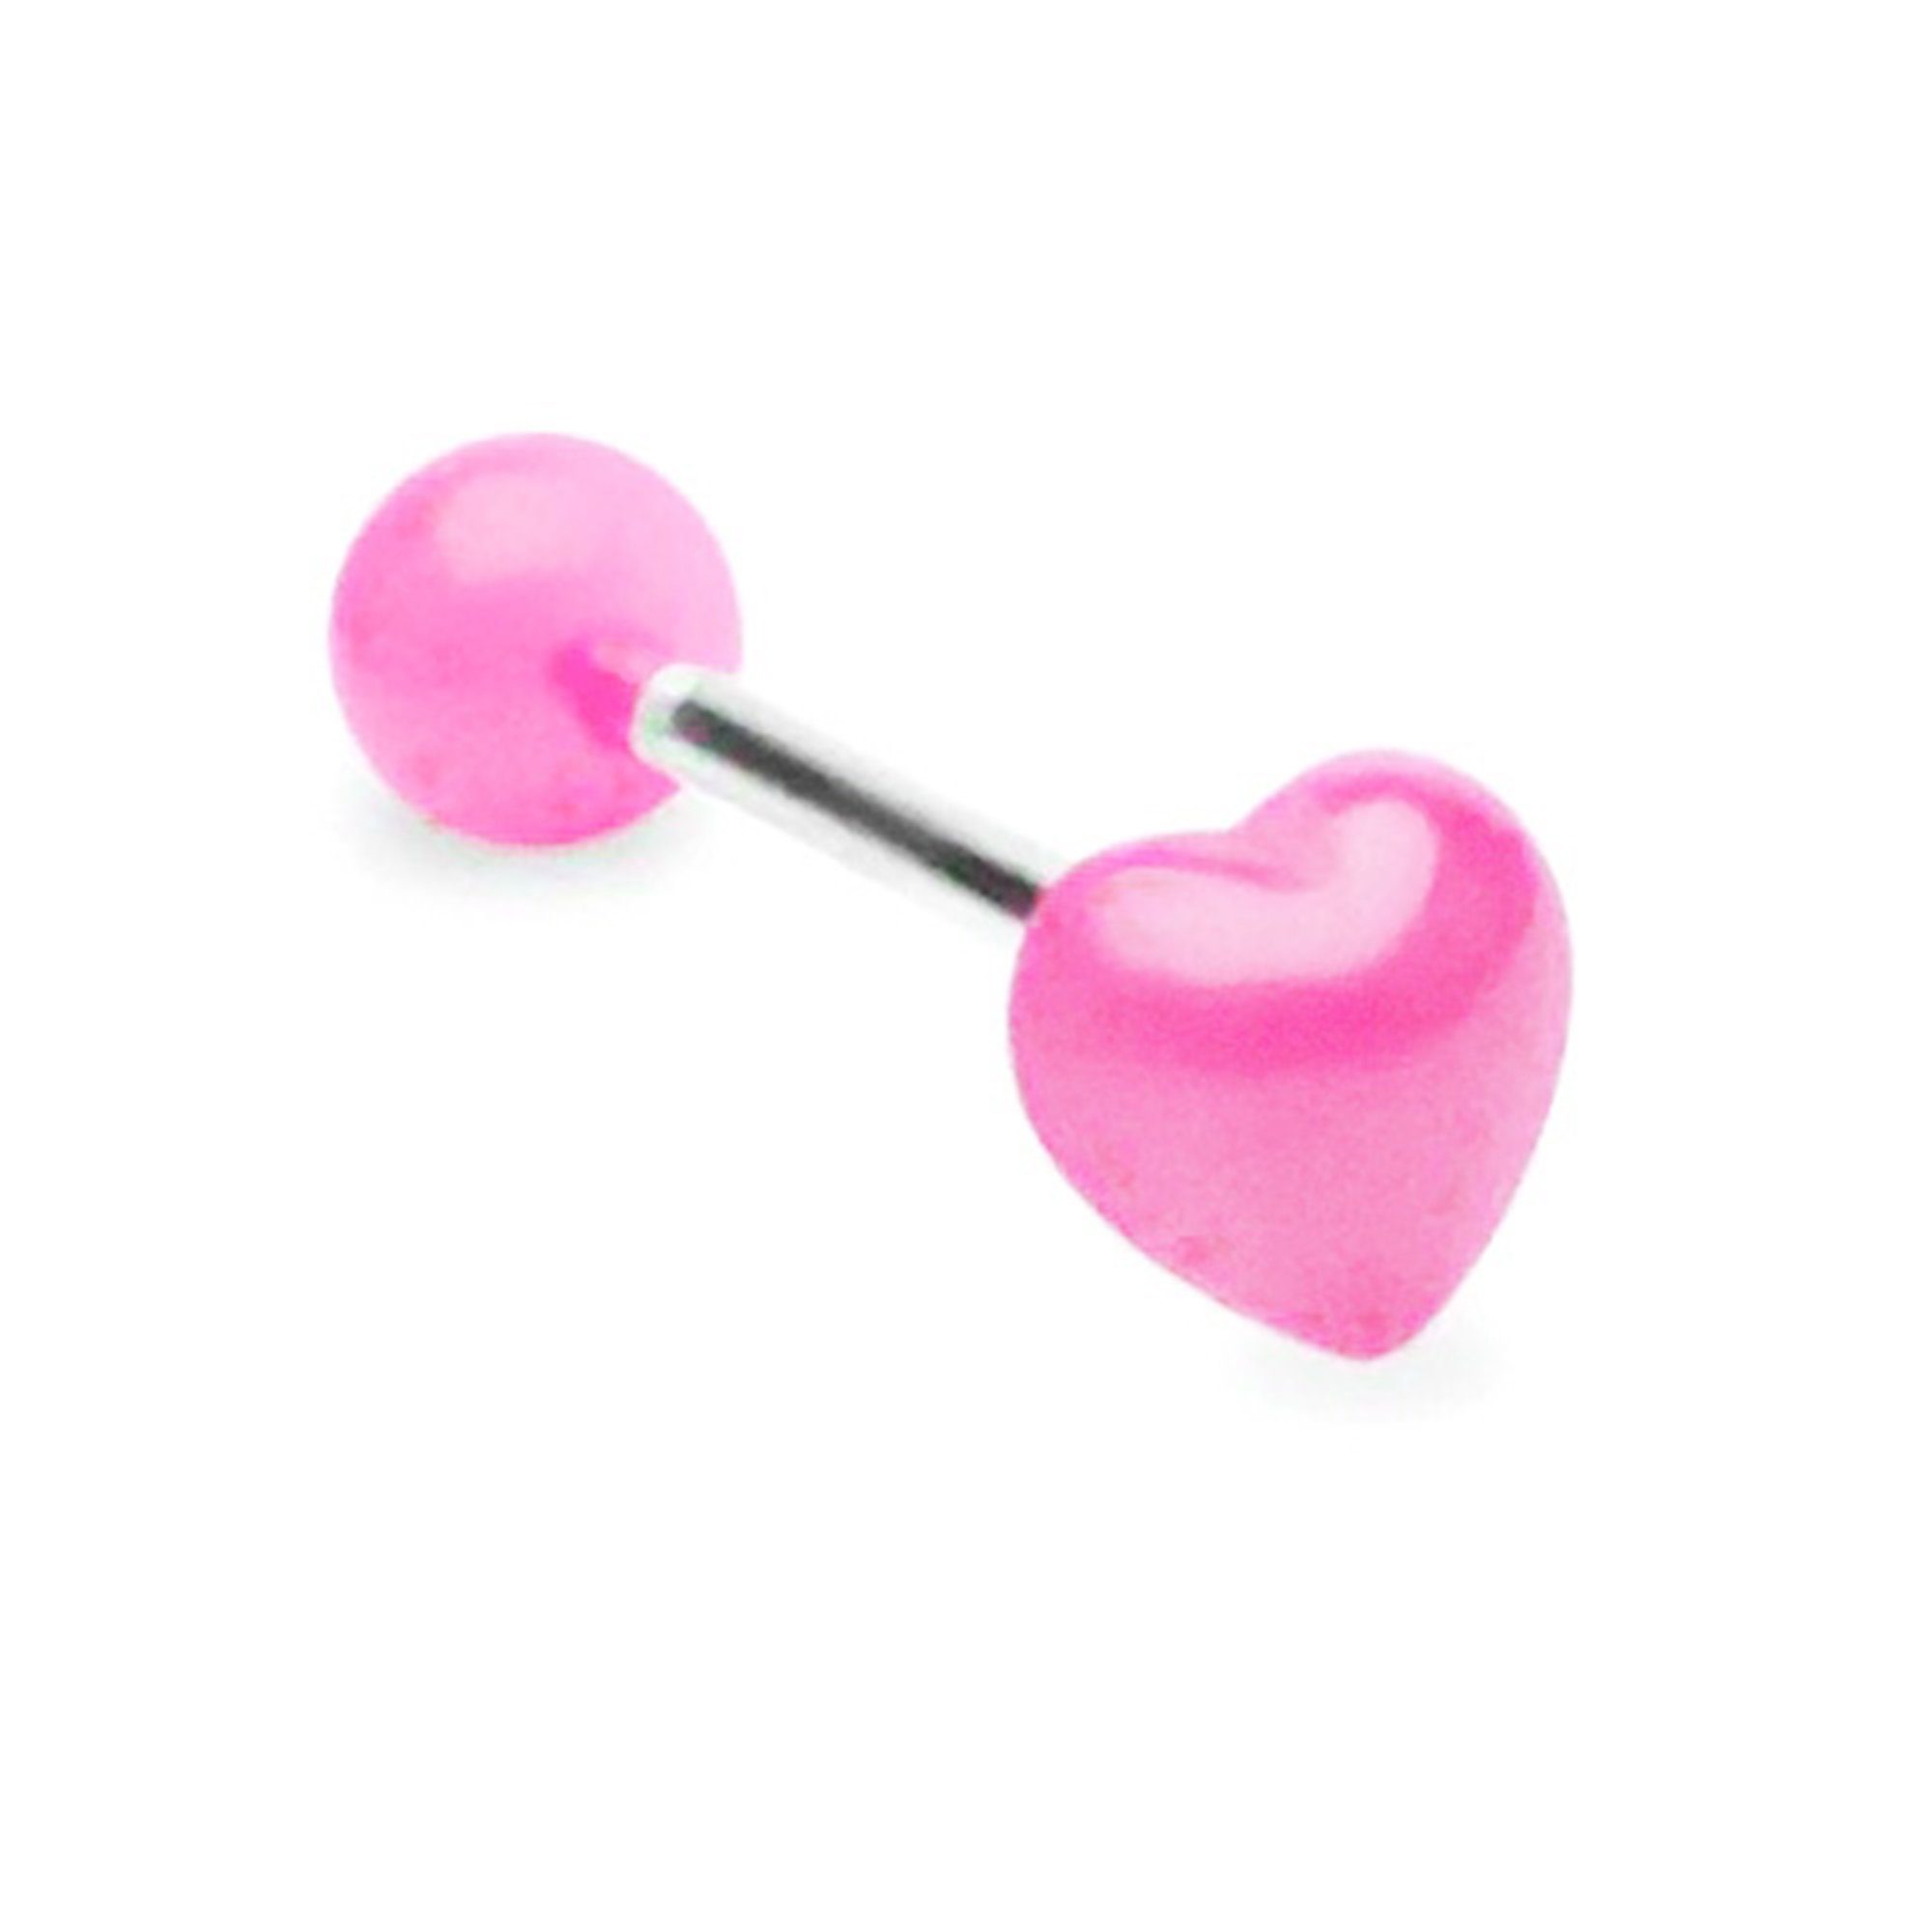 Taffstyle Piercing-Set Zungenpiercing Intim Oral Ohr mit UV Herz, Piercingfaktor Barbell Stab Intim Brust Hantel Stecker Zungenpiercing Pink